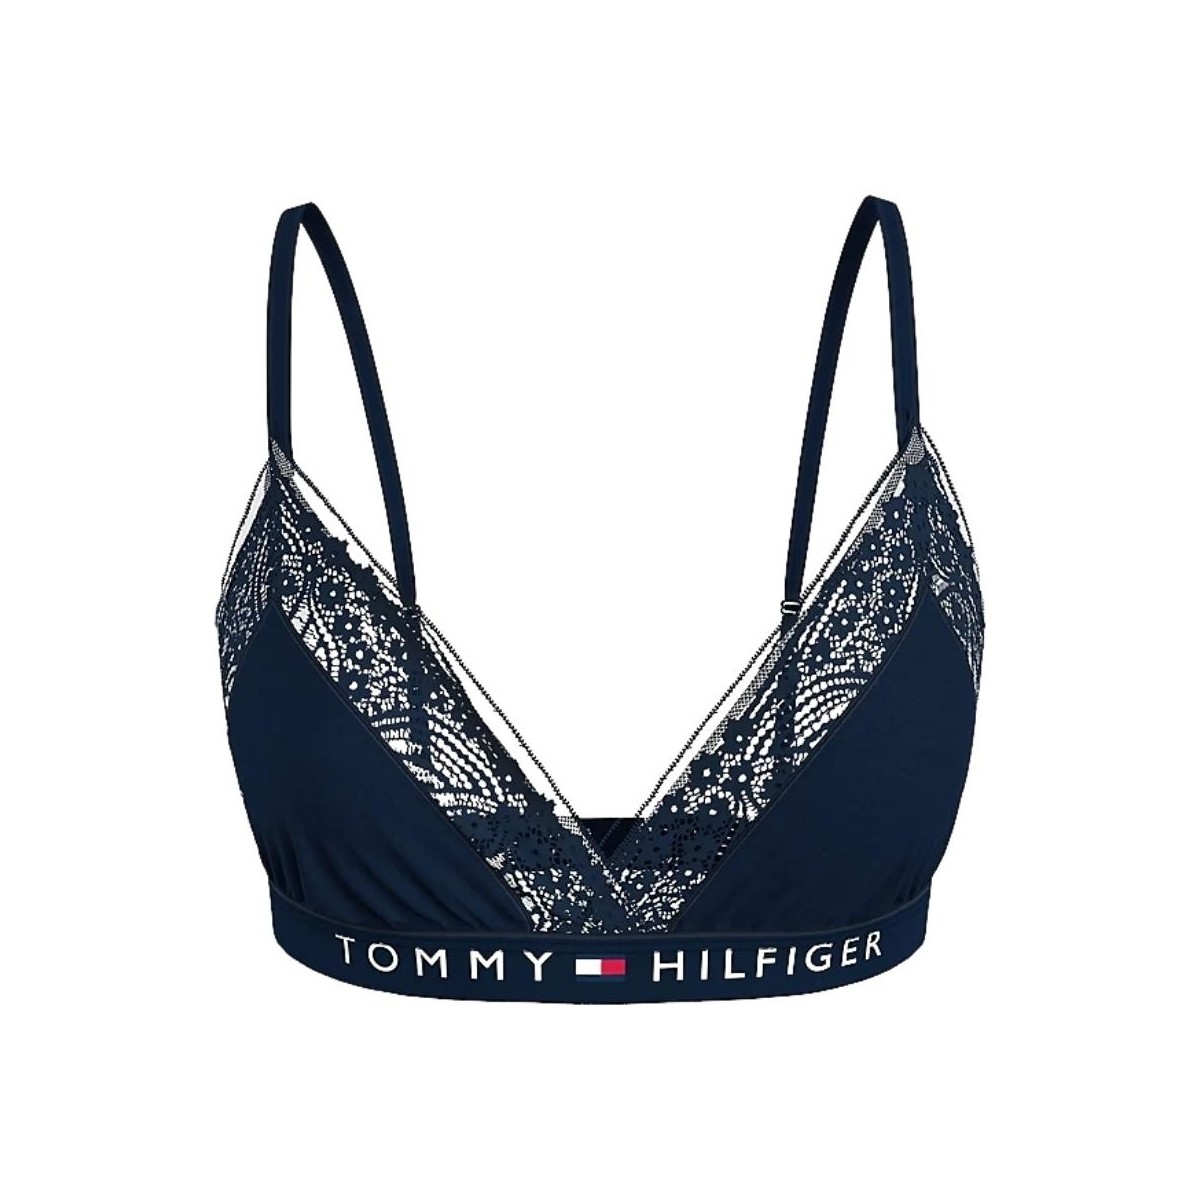 Sous-vêtements Femme Culottes & slips Tommy Hilfiger Soutien-gorge triangle  Ref 58109 DW5 Marine Bleu